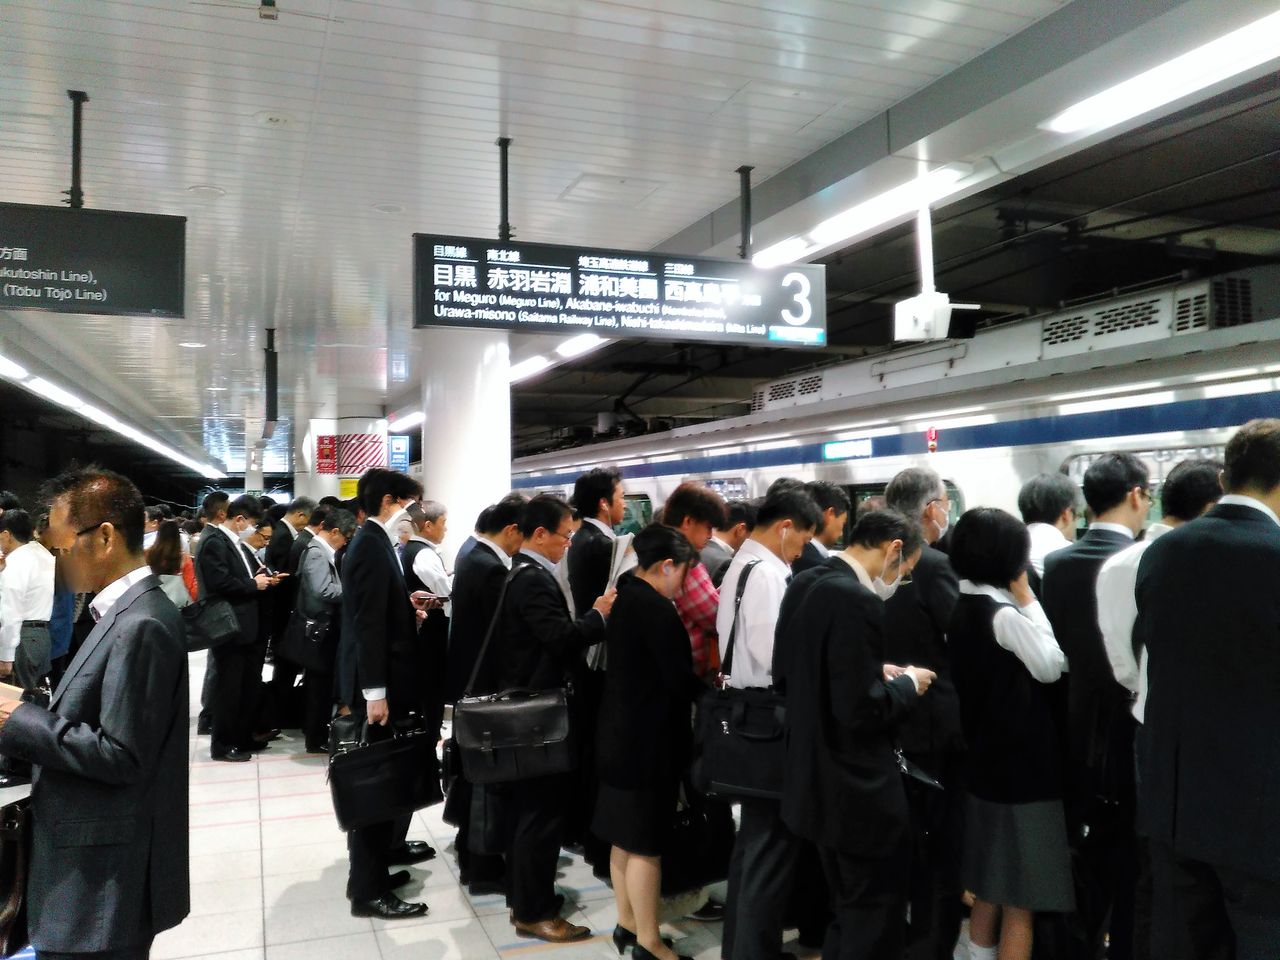 東急目黒線 その6 朝ラッシュ 日吉駅で目黒線を待つ乗客が密集 Shinoの鉄道ブログ